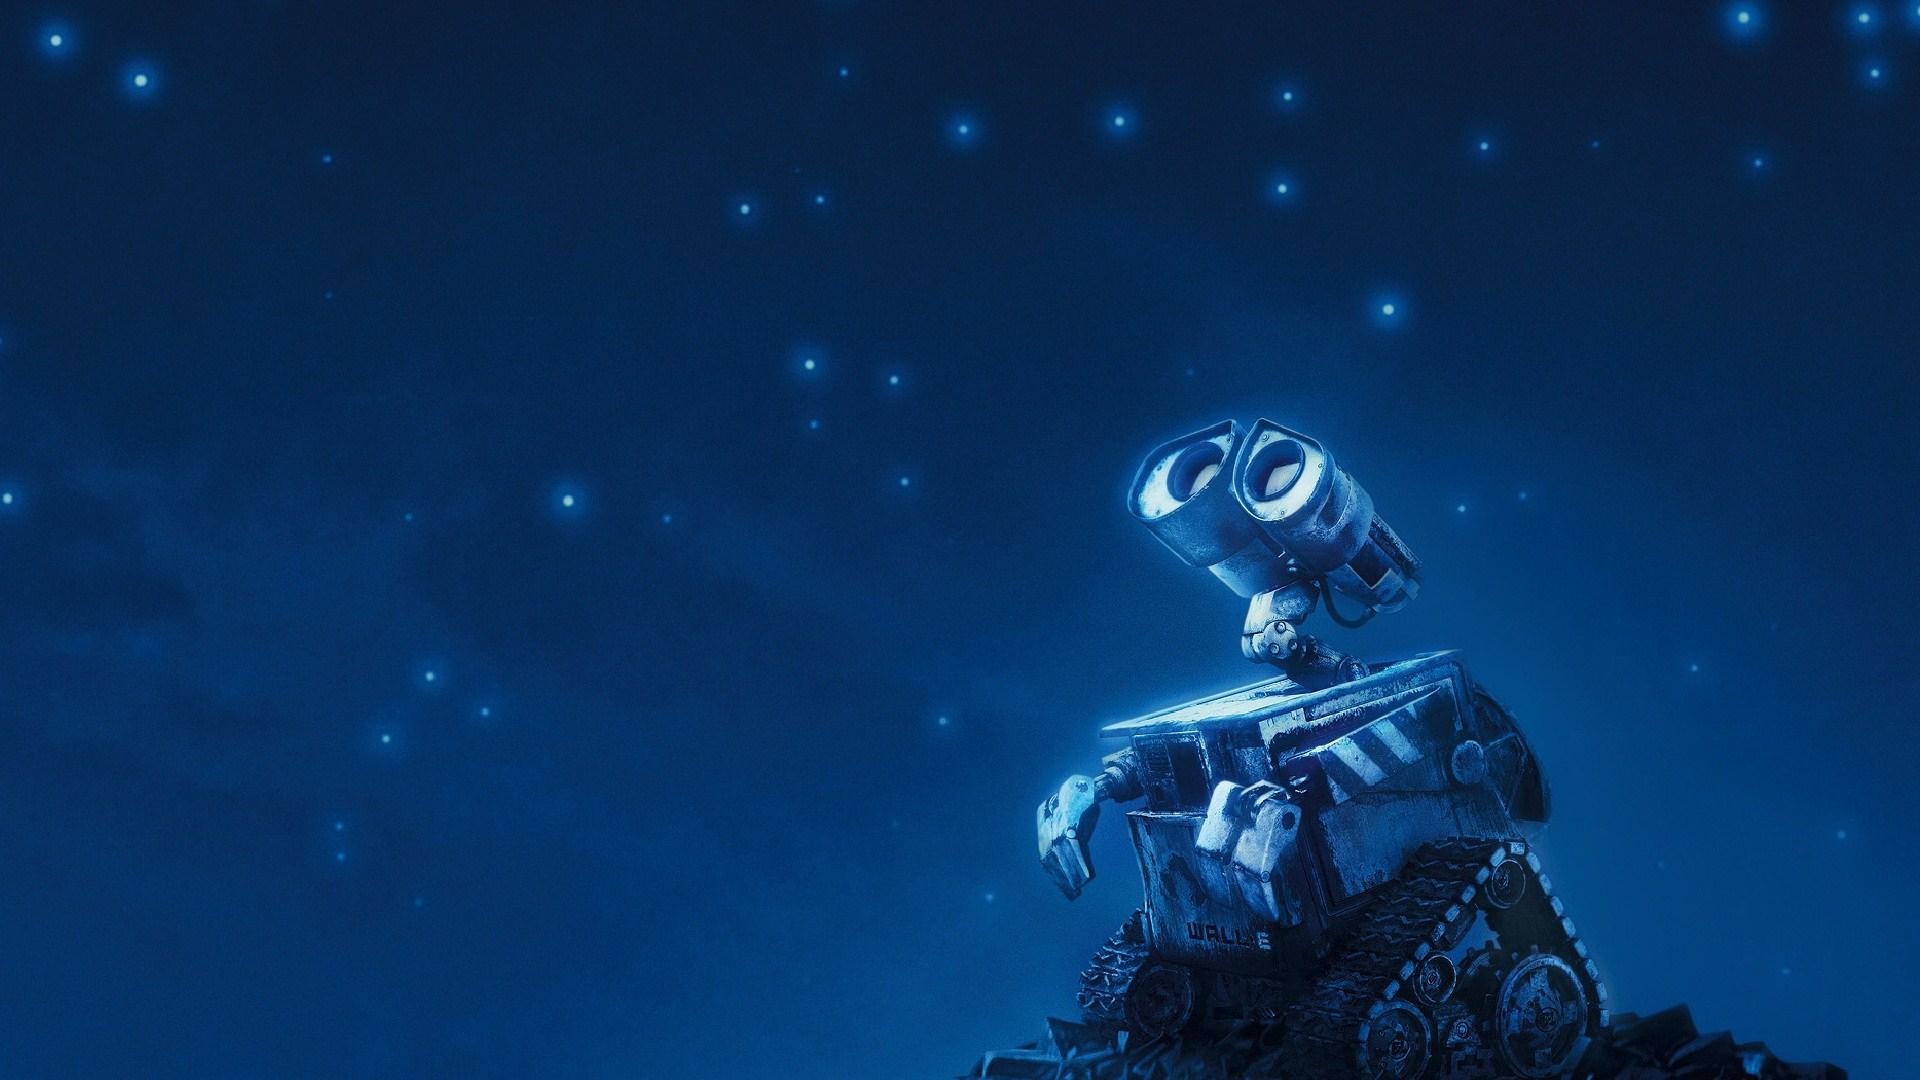 Wall E Robot Night Stars Sky Animated Cartoon